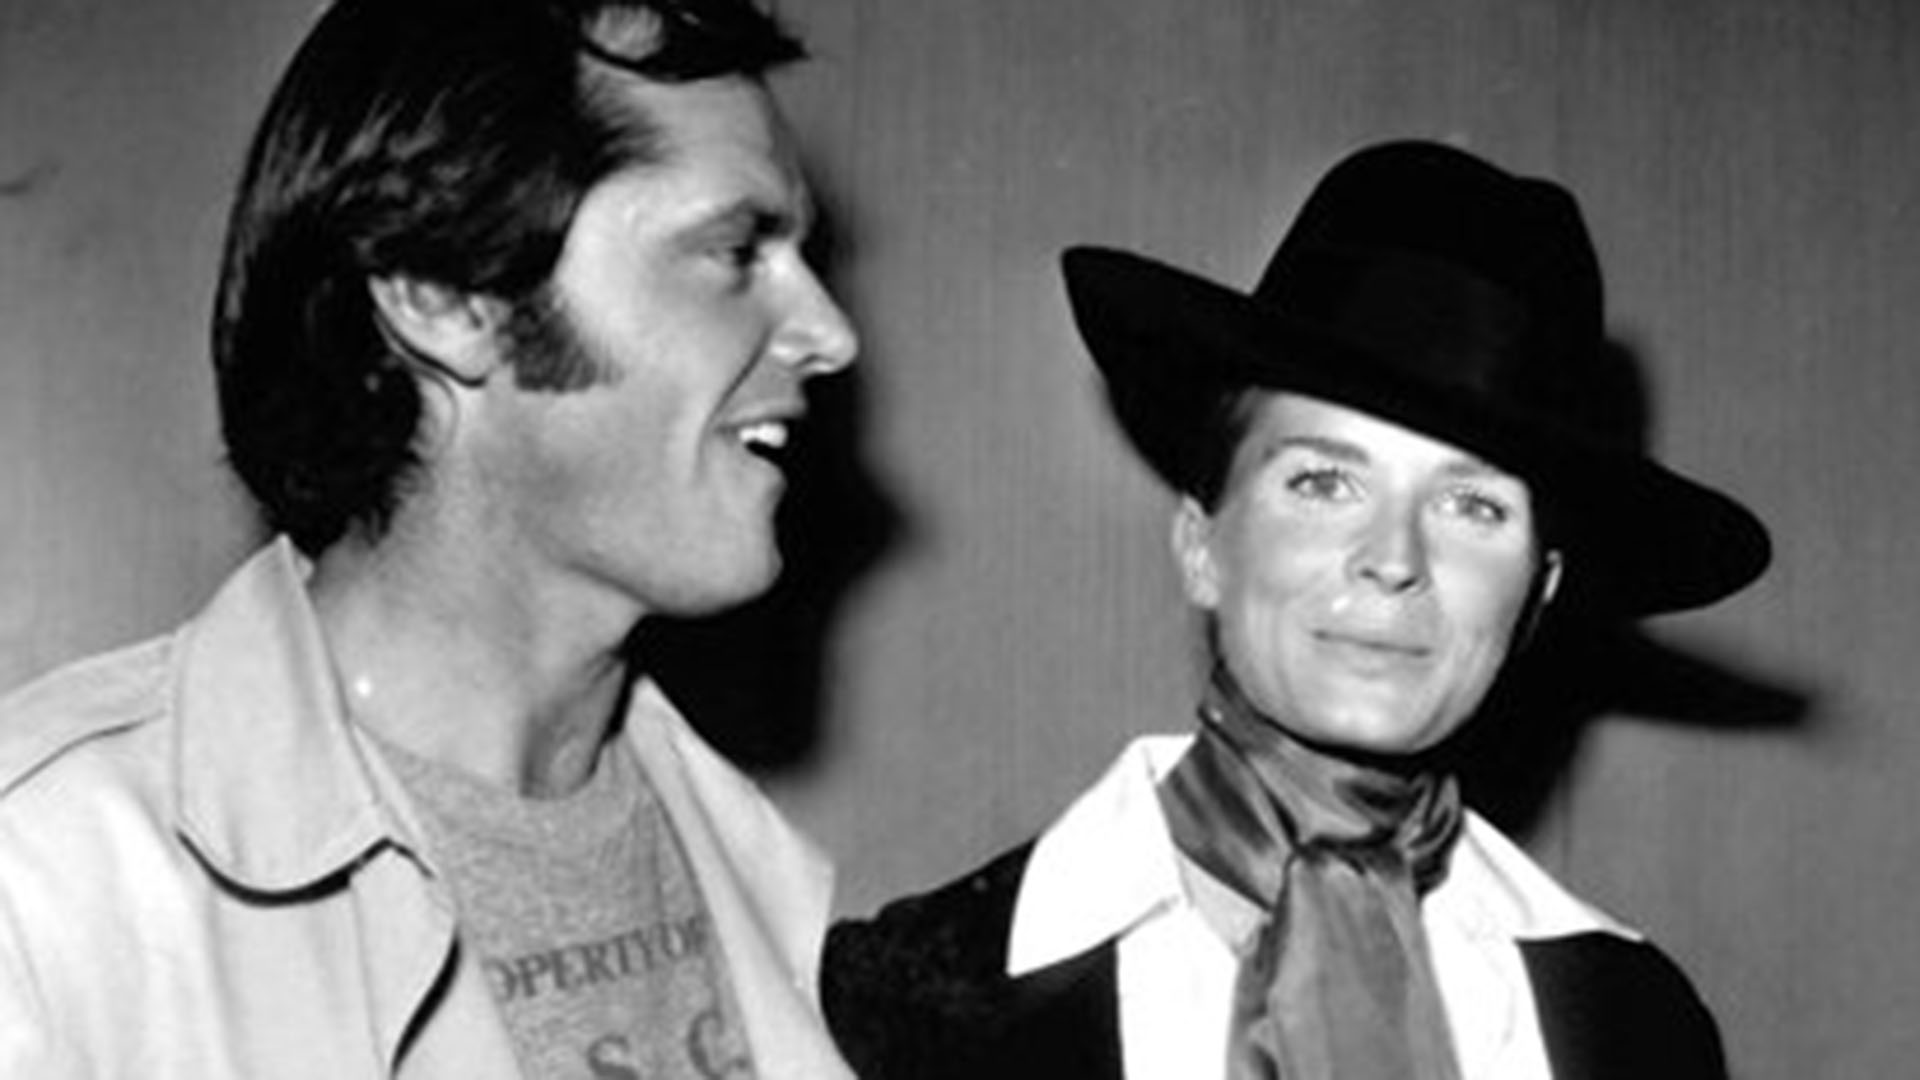 Candice Bergen en su juventud con uno de sus muchos amores, Jack Nicholson. Estuvo casada durante muchos años con el director de cine francés, Louis Malle